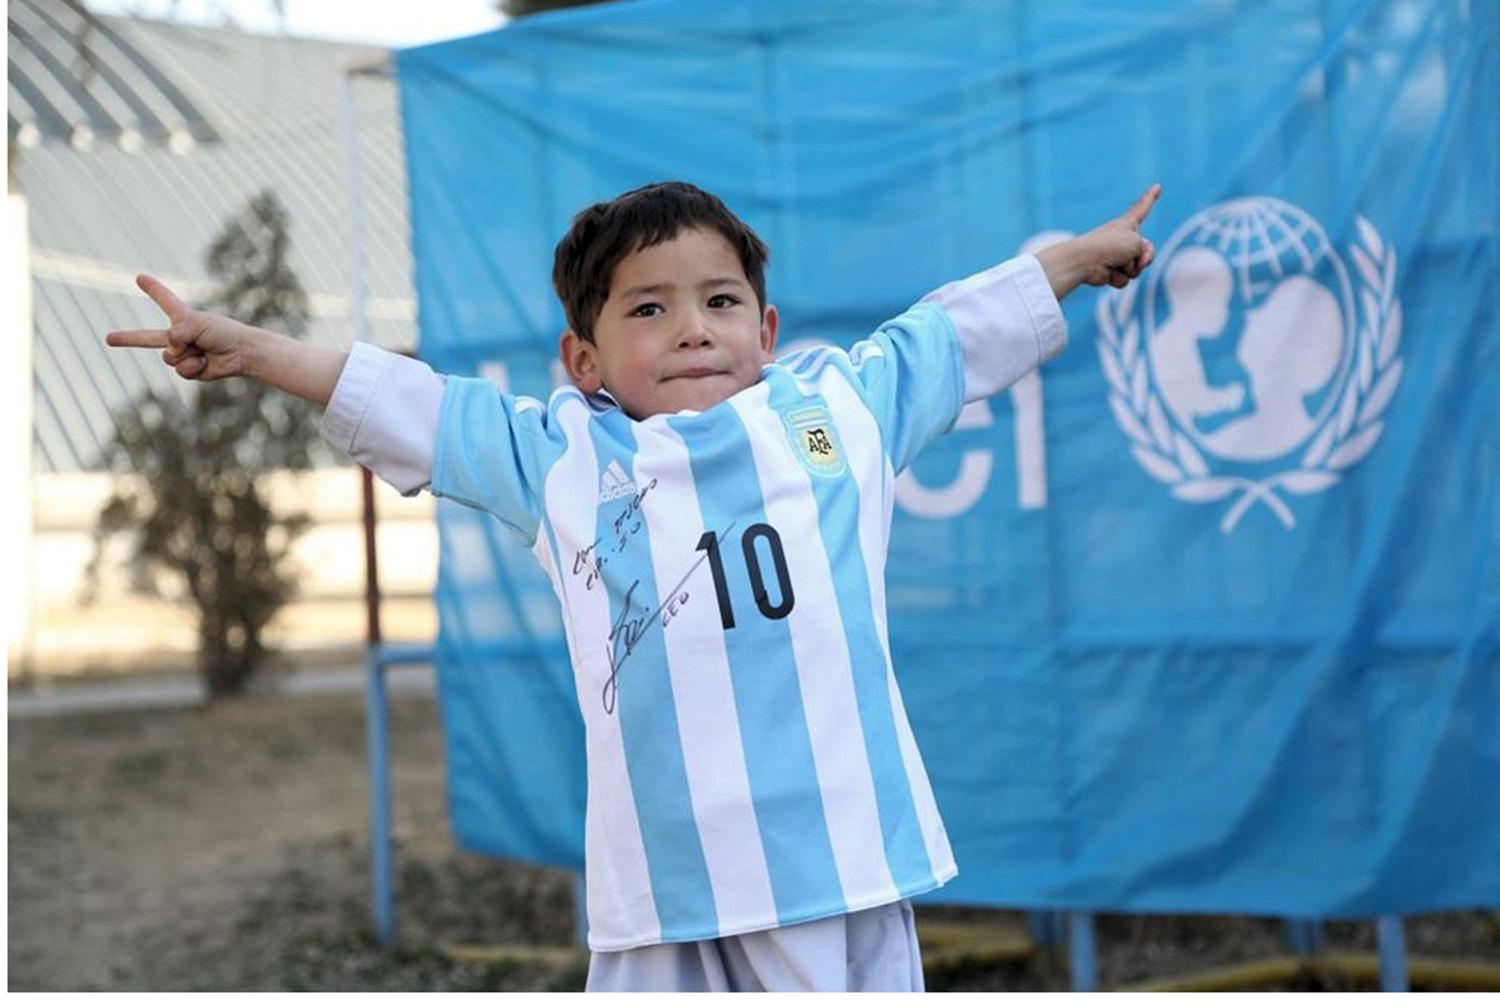 پیراهن امضا شده برای کودک افغان؛ حالا پیراهن مسی را بپوش!